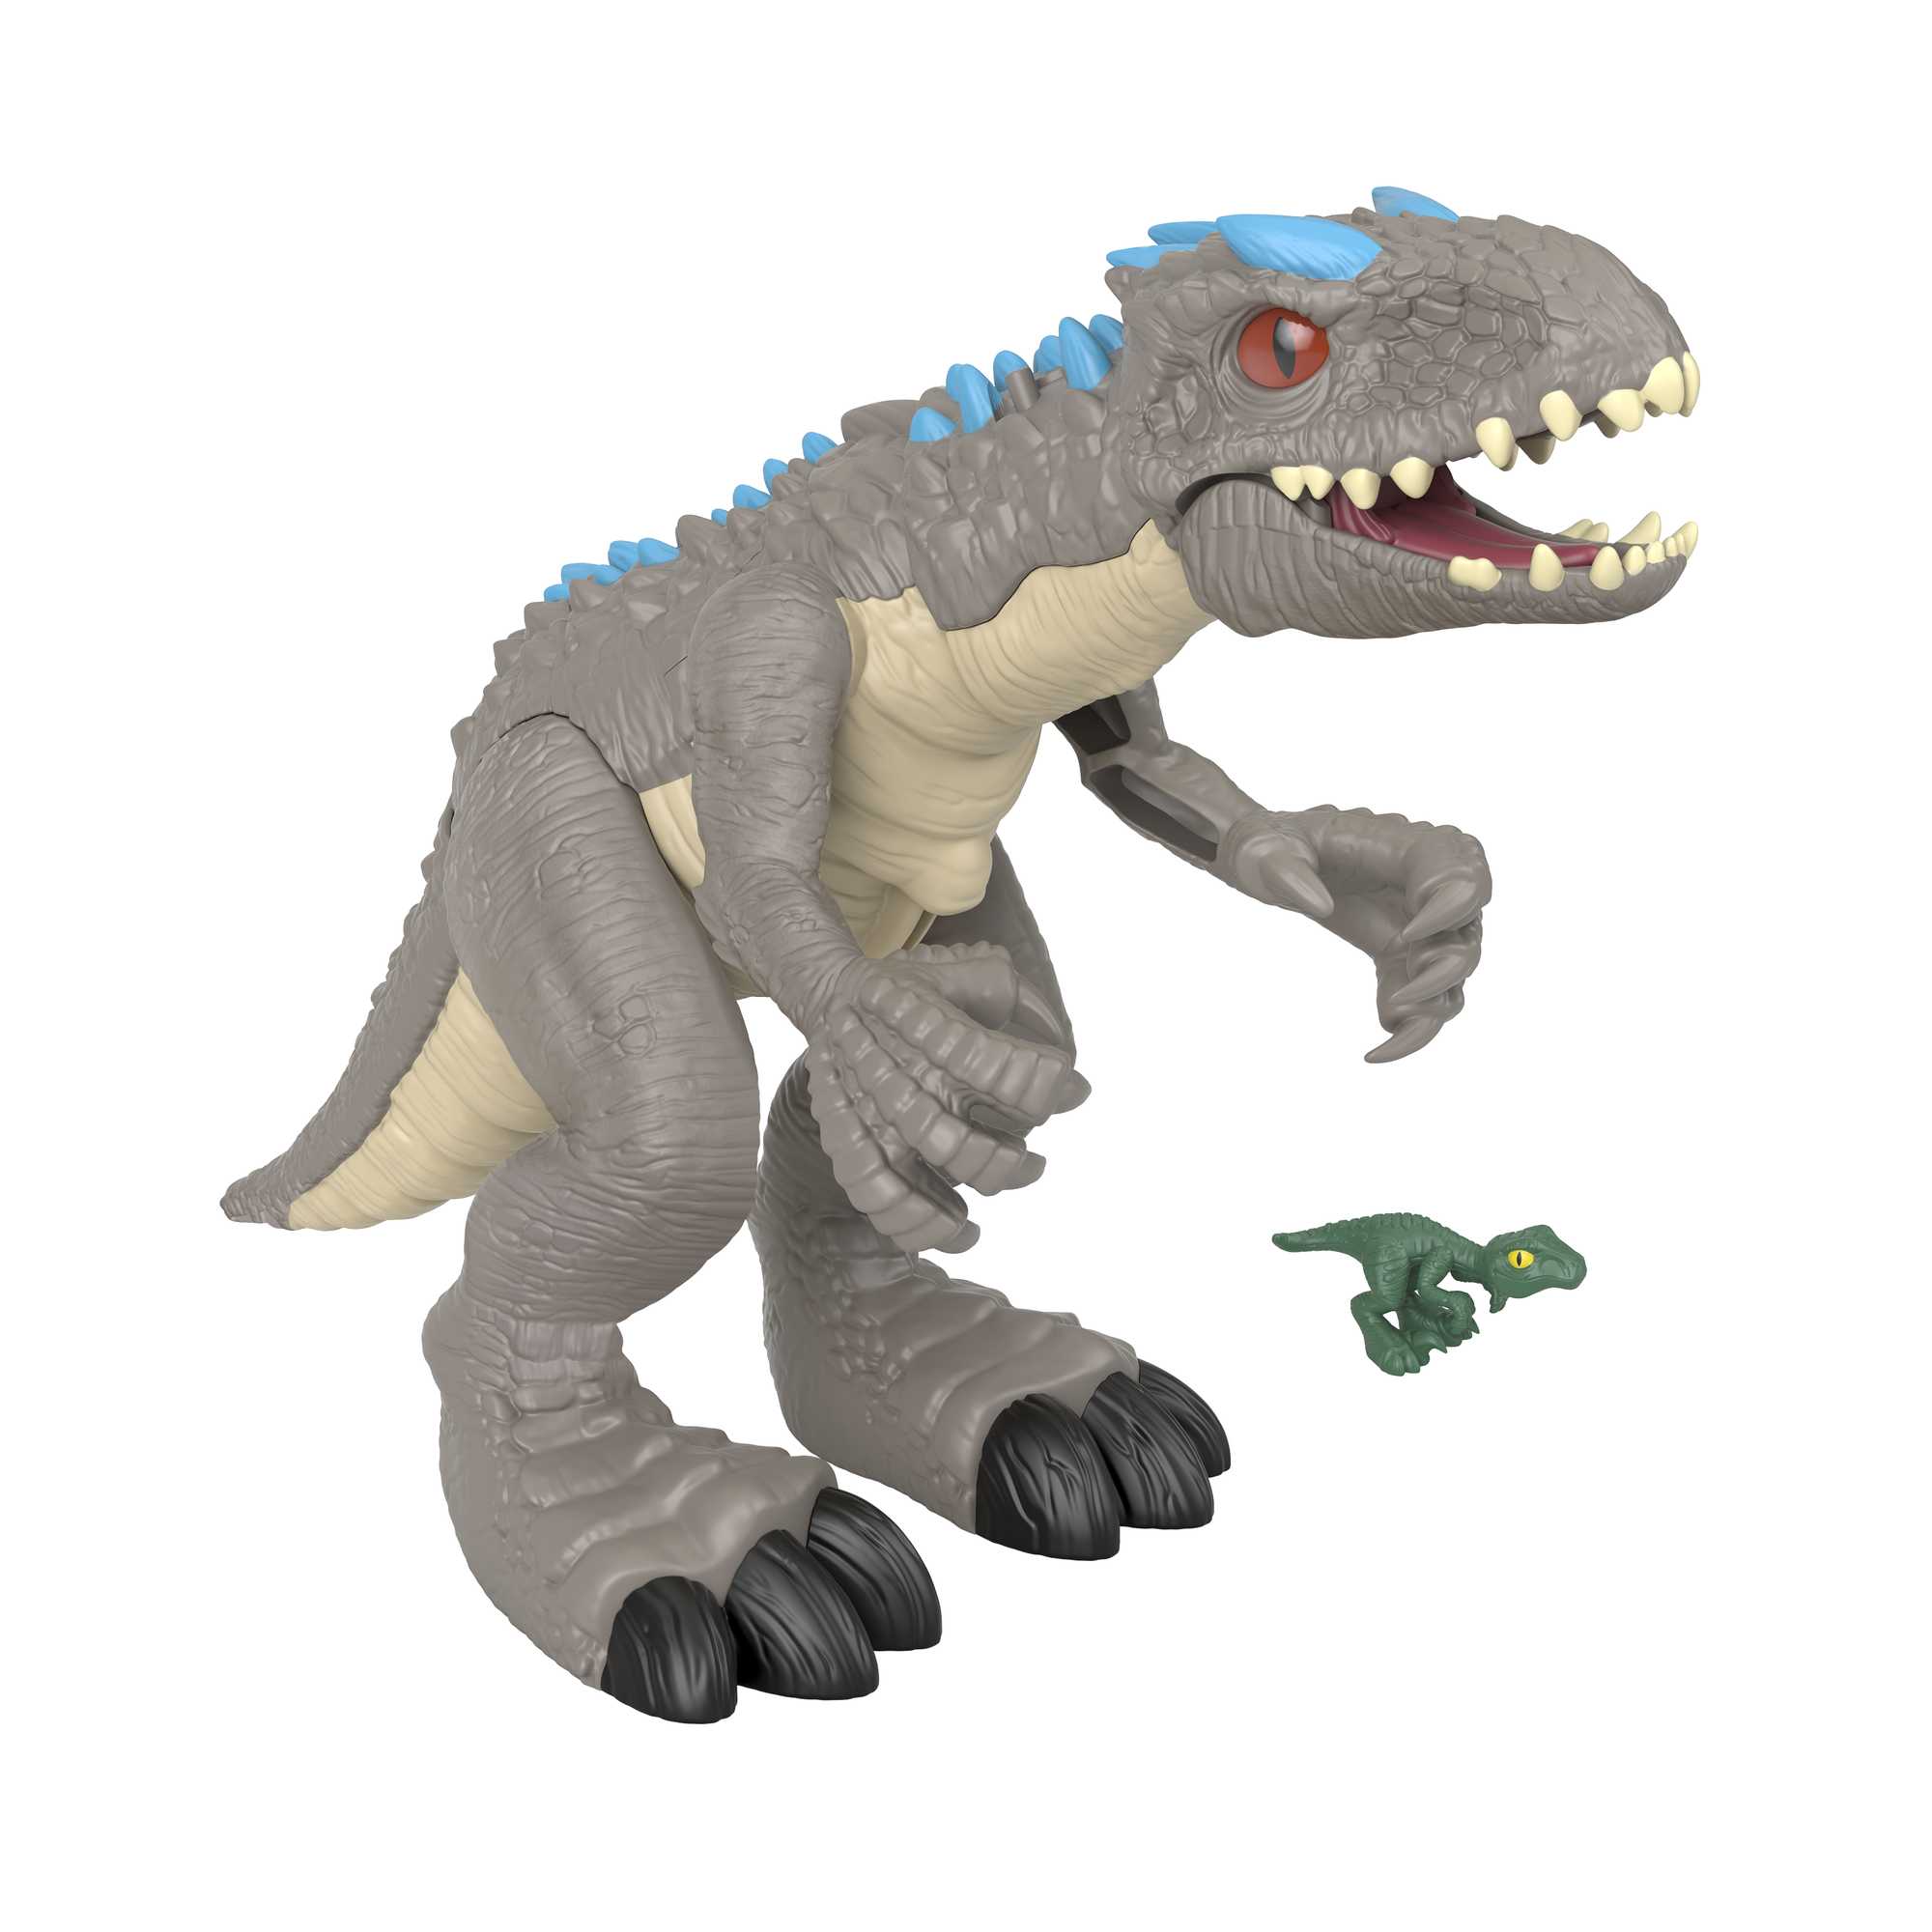 Imaginext Thrashing Indominus Rex | Mattel